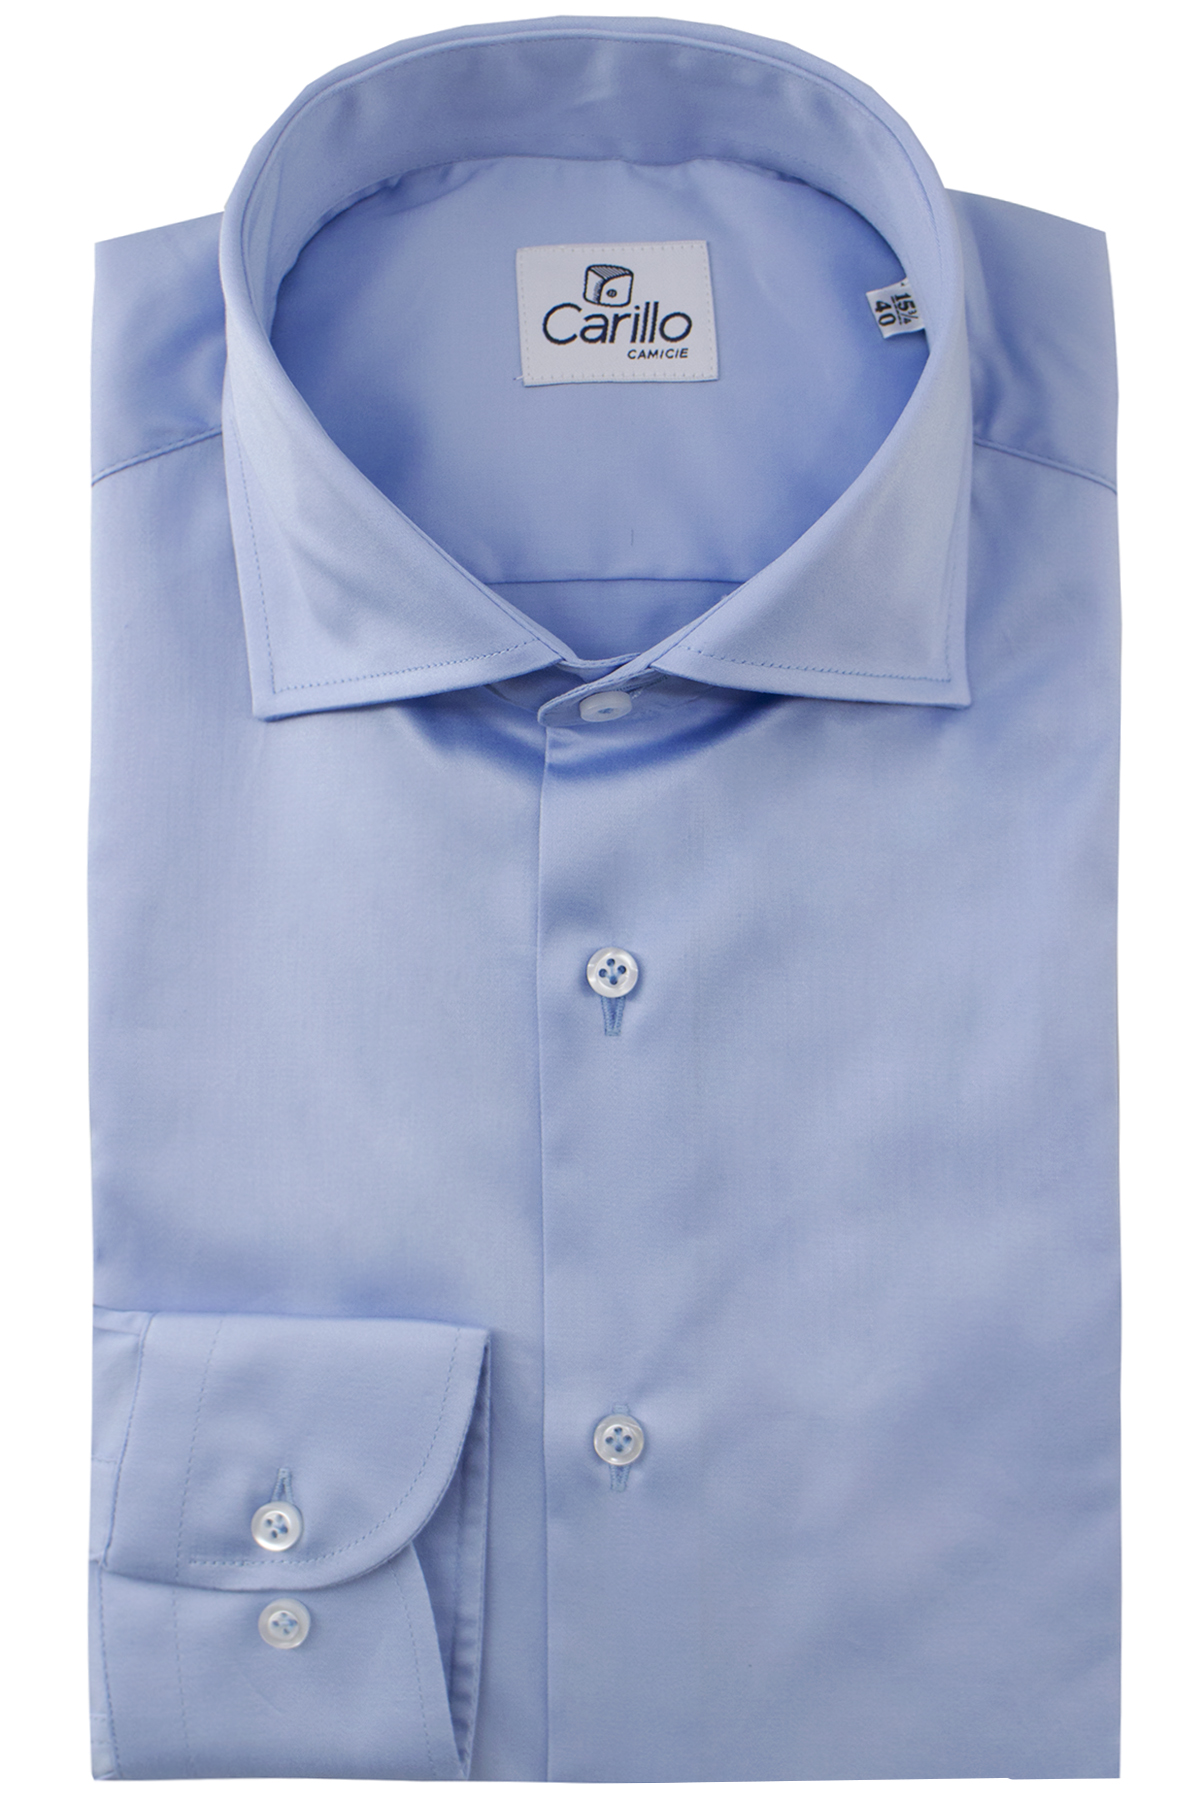 Blu/Bianco M sconto 82% MODA UOMO Camicie & T-shirt Tailored fit Sfera Camicia 